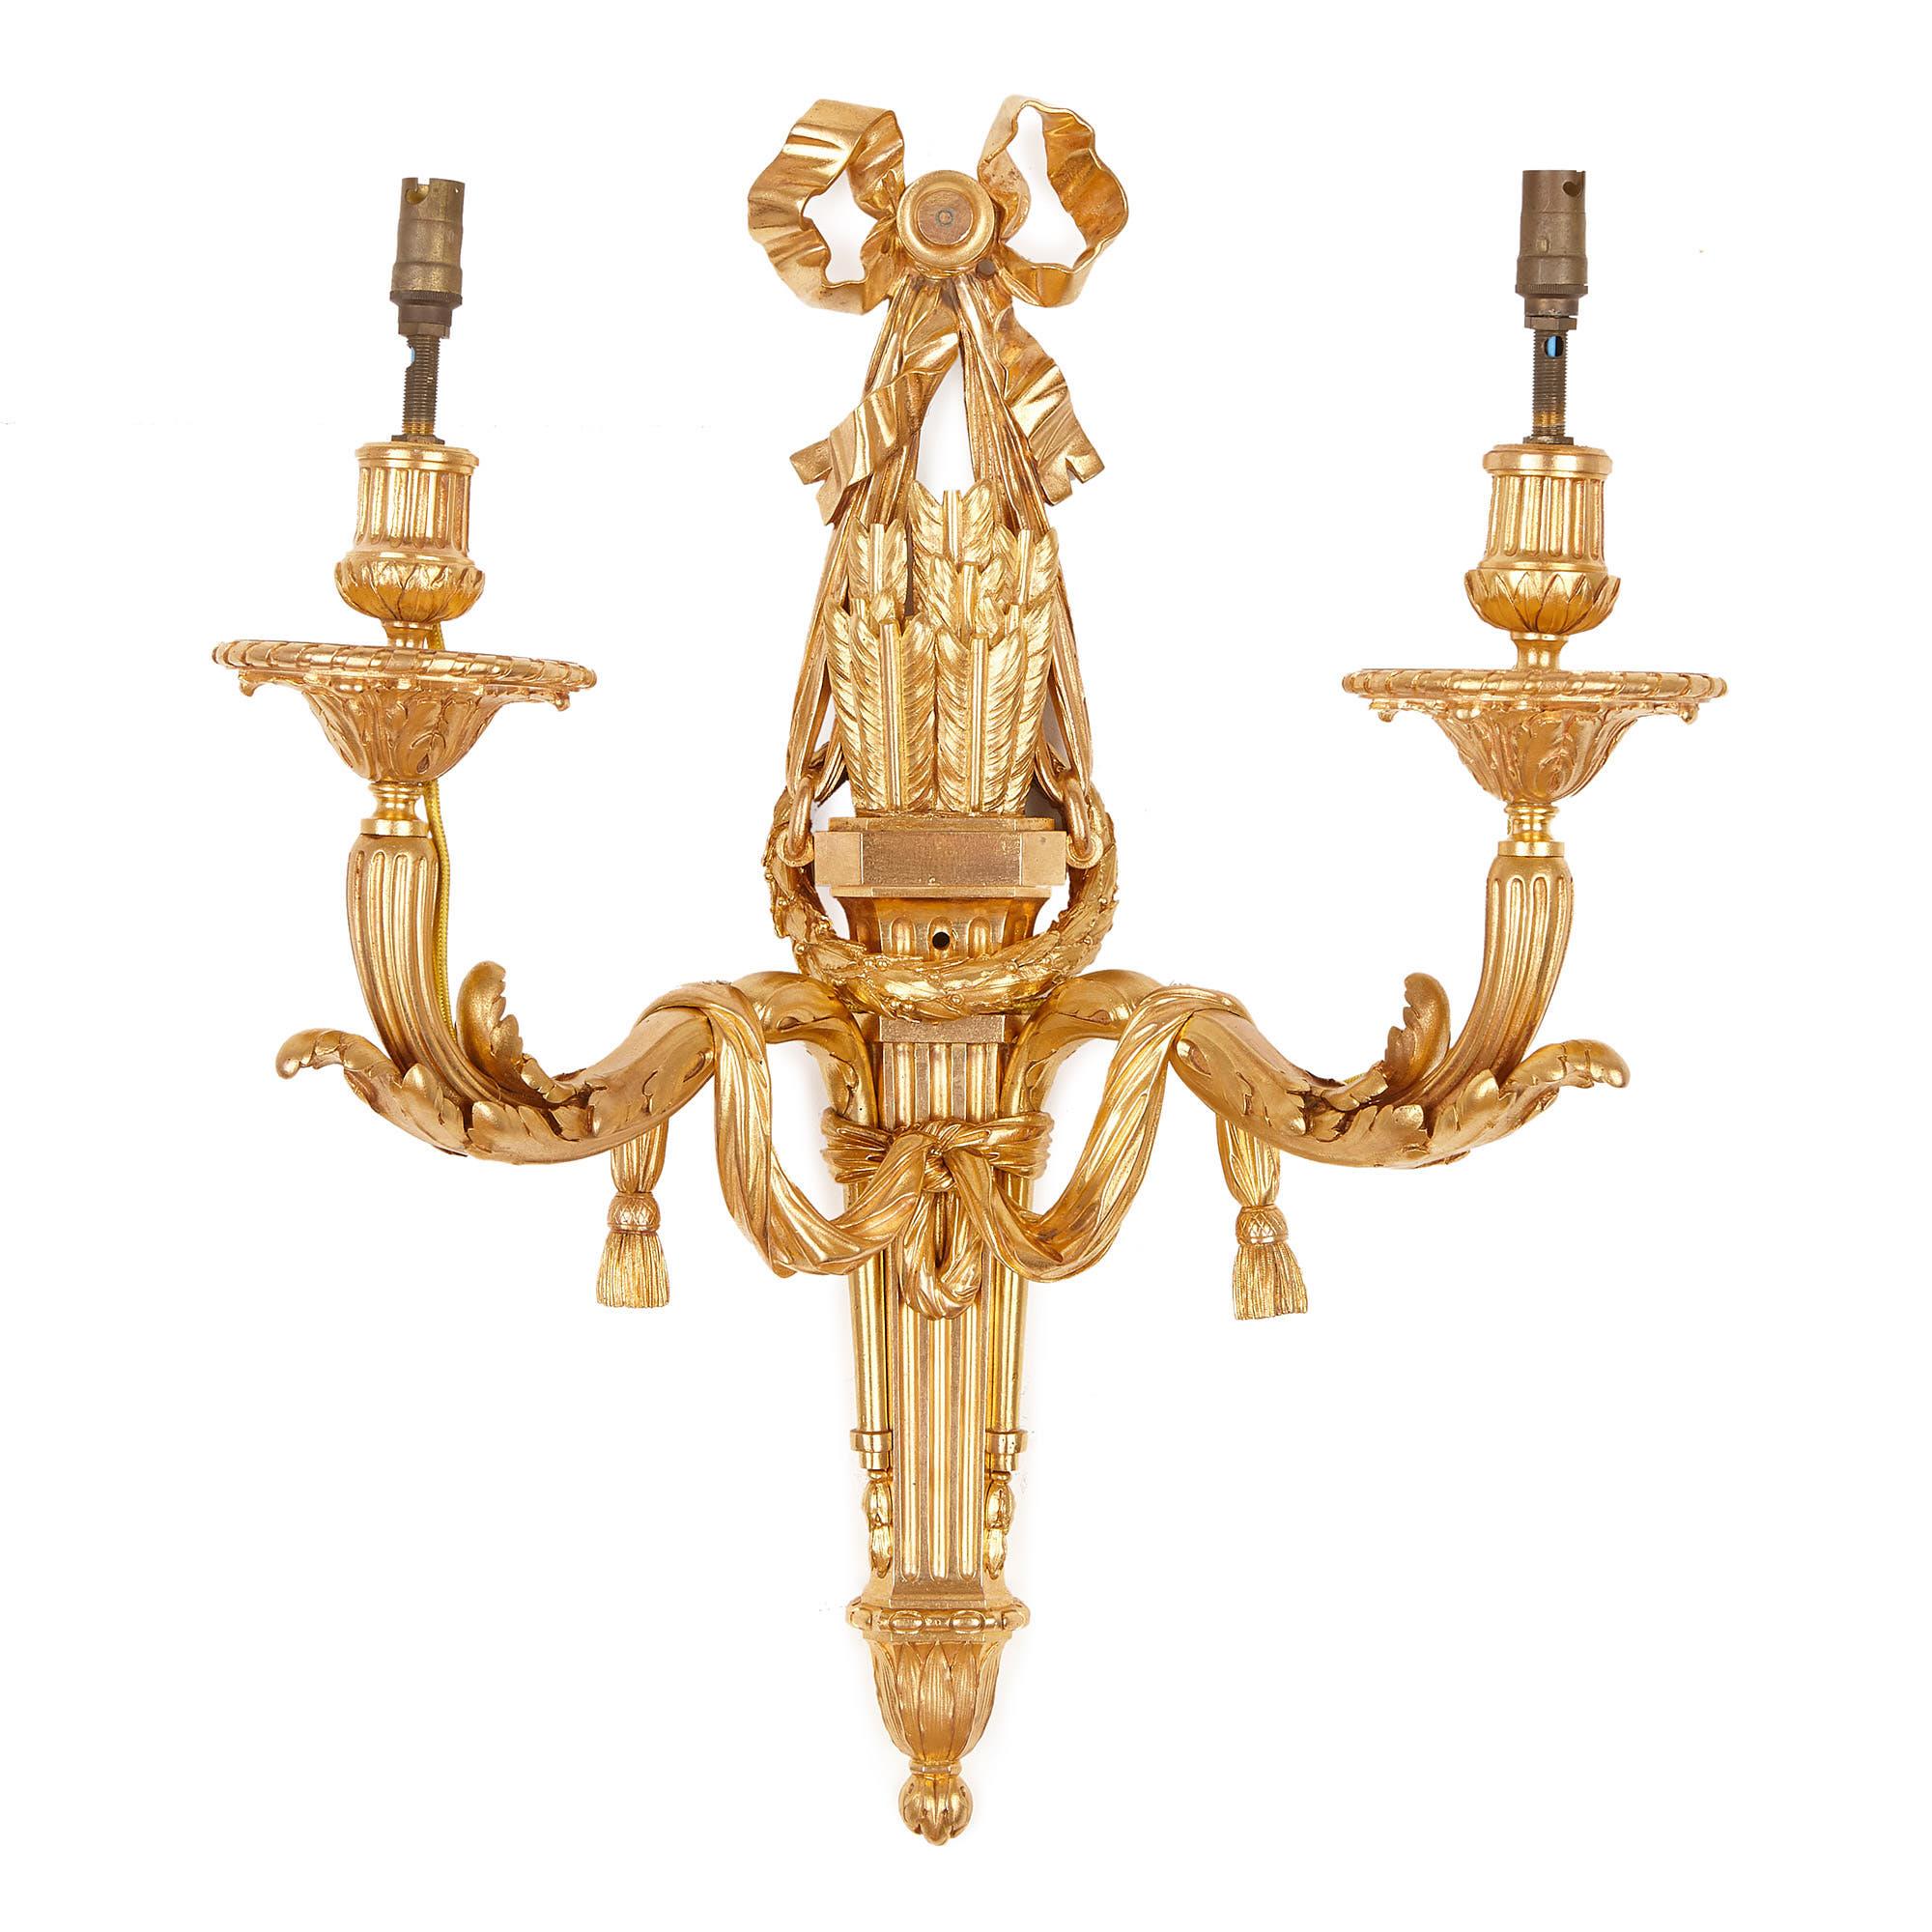 Les appliques en bronze doré sont conçues à l'identique dans un élégant style néoclassique. Les tiges des appliques sont en forme de carquois de flèche, qui sont chacun montés avec deux bras. Ces bras ont des bases feuillagées, qui sont drapées